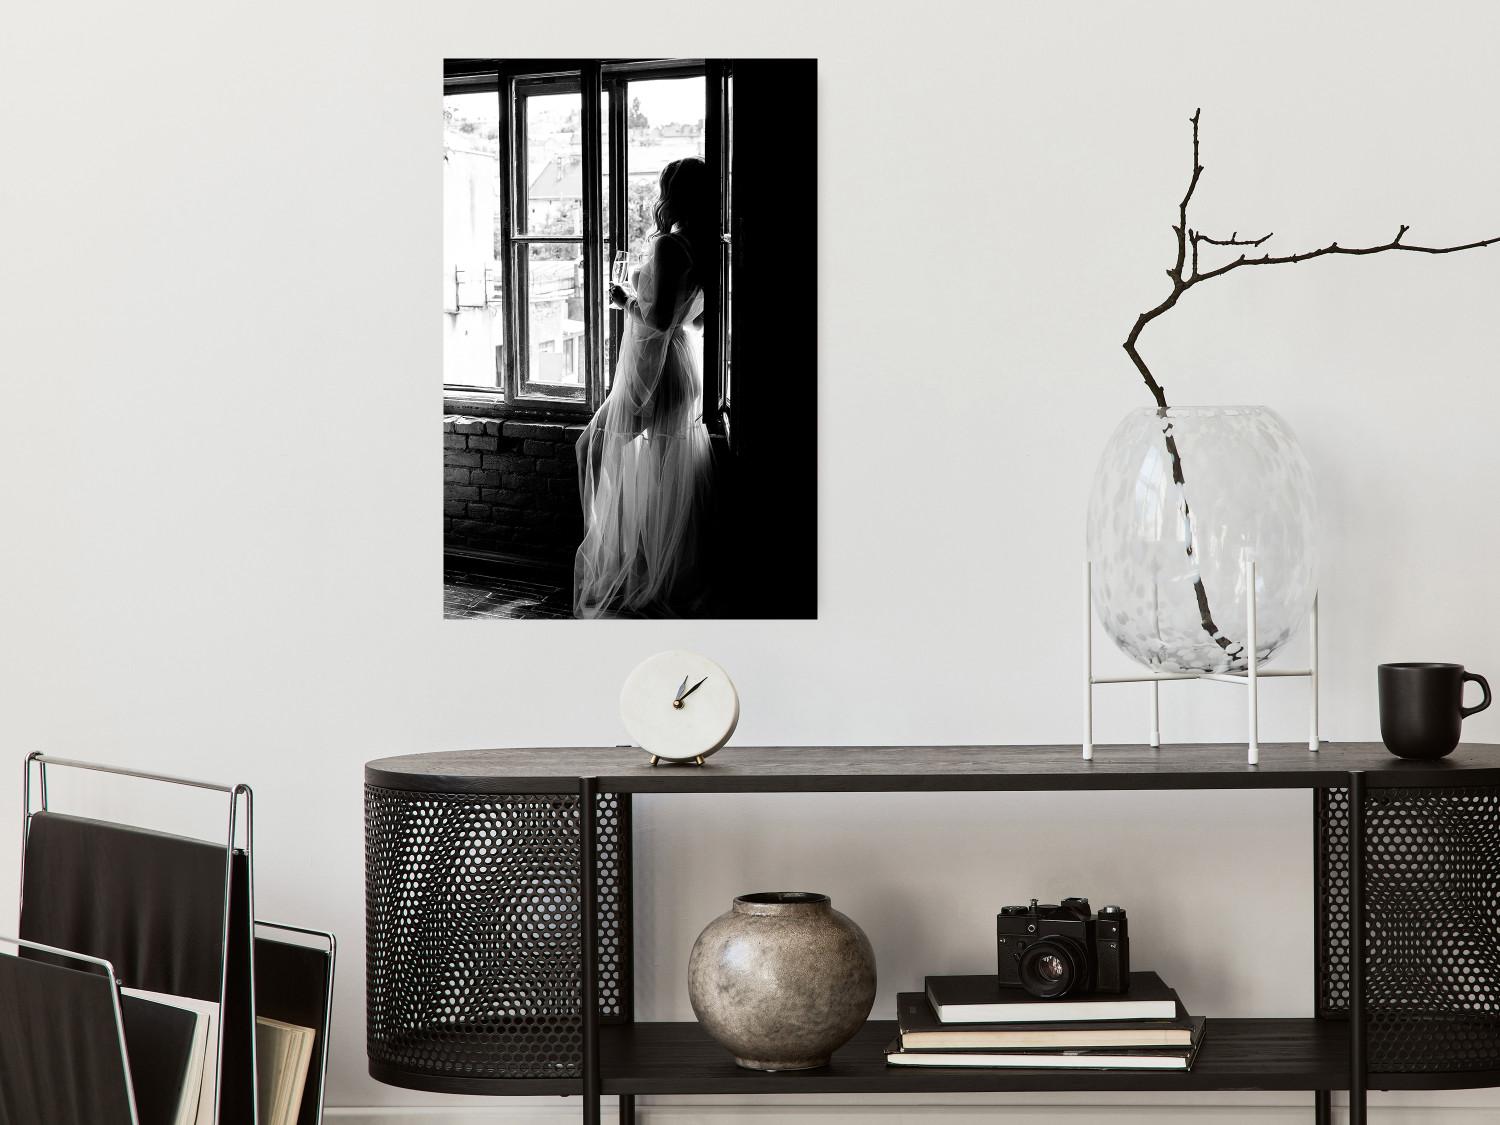 Cartel Memoria de viaje: paisaje en blanco y negro de una mujer en la ventana